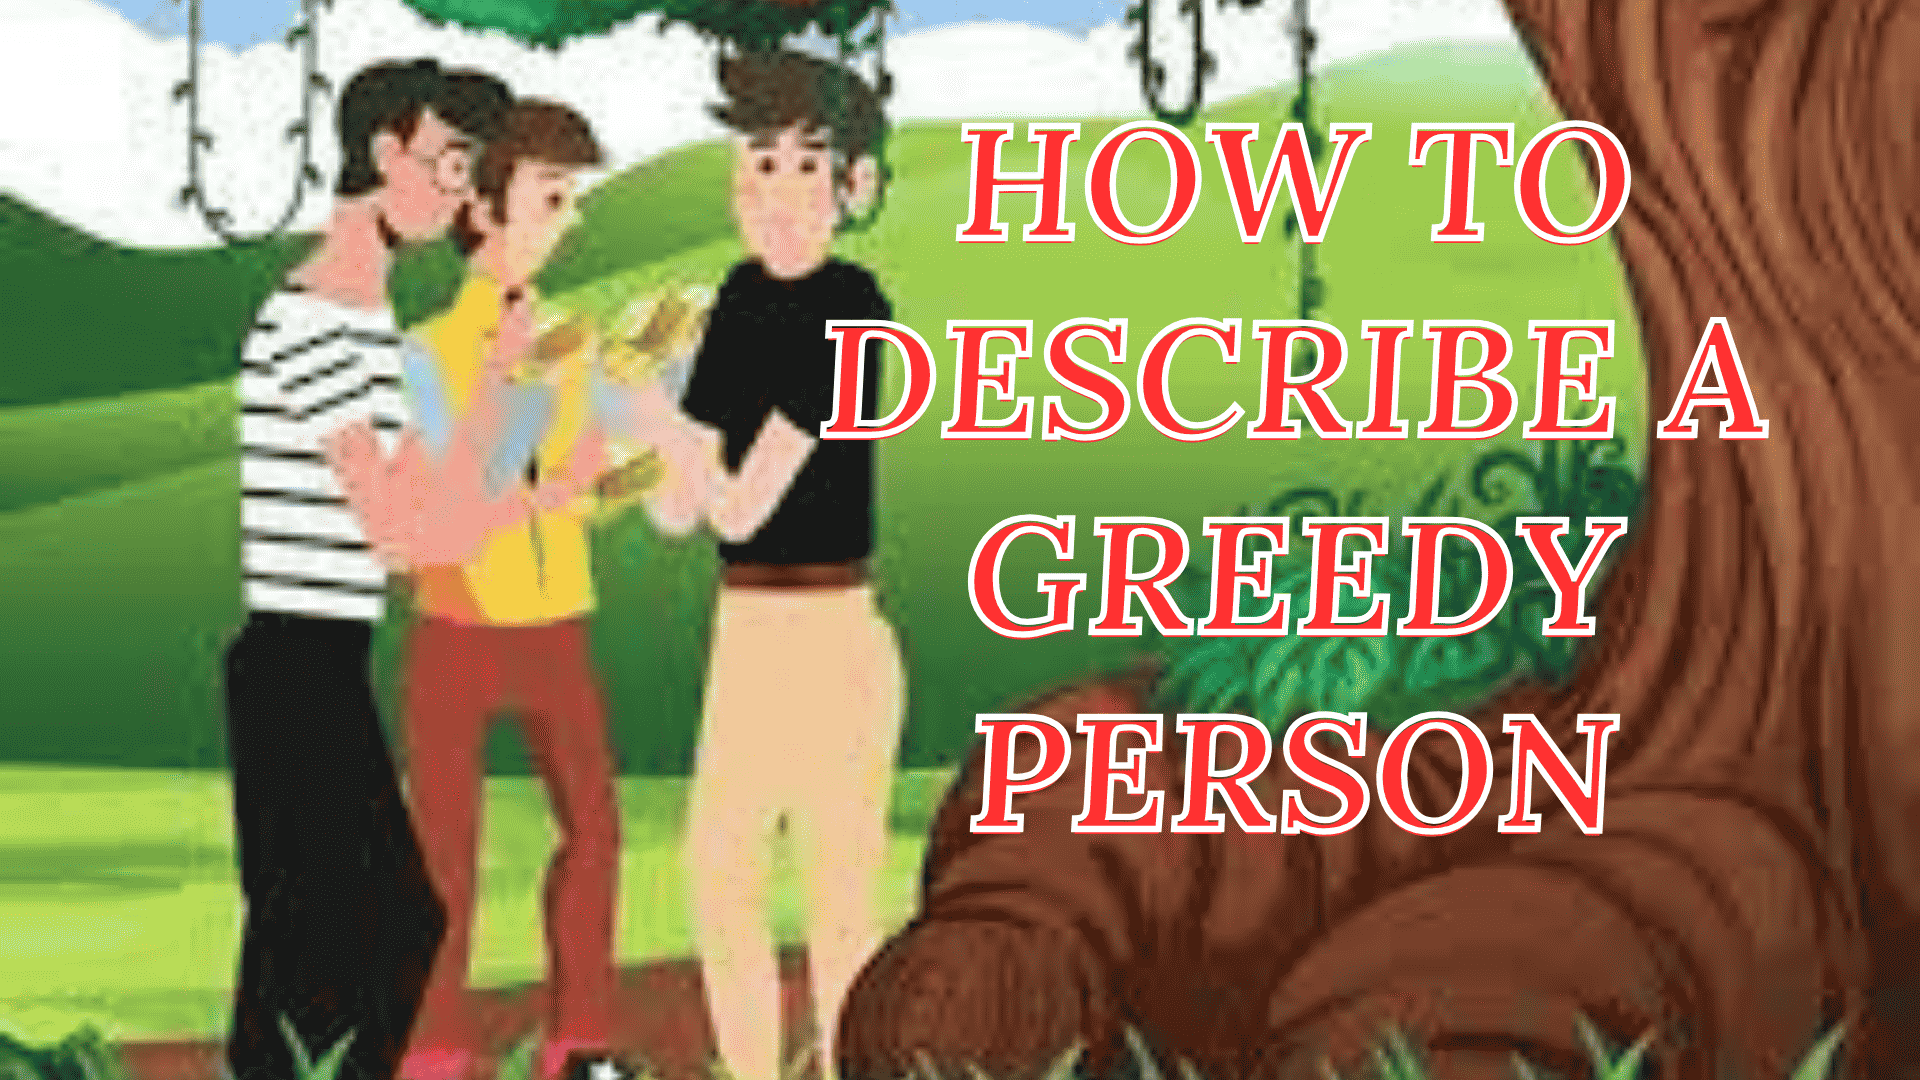 How to describe a greedy person